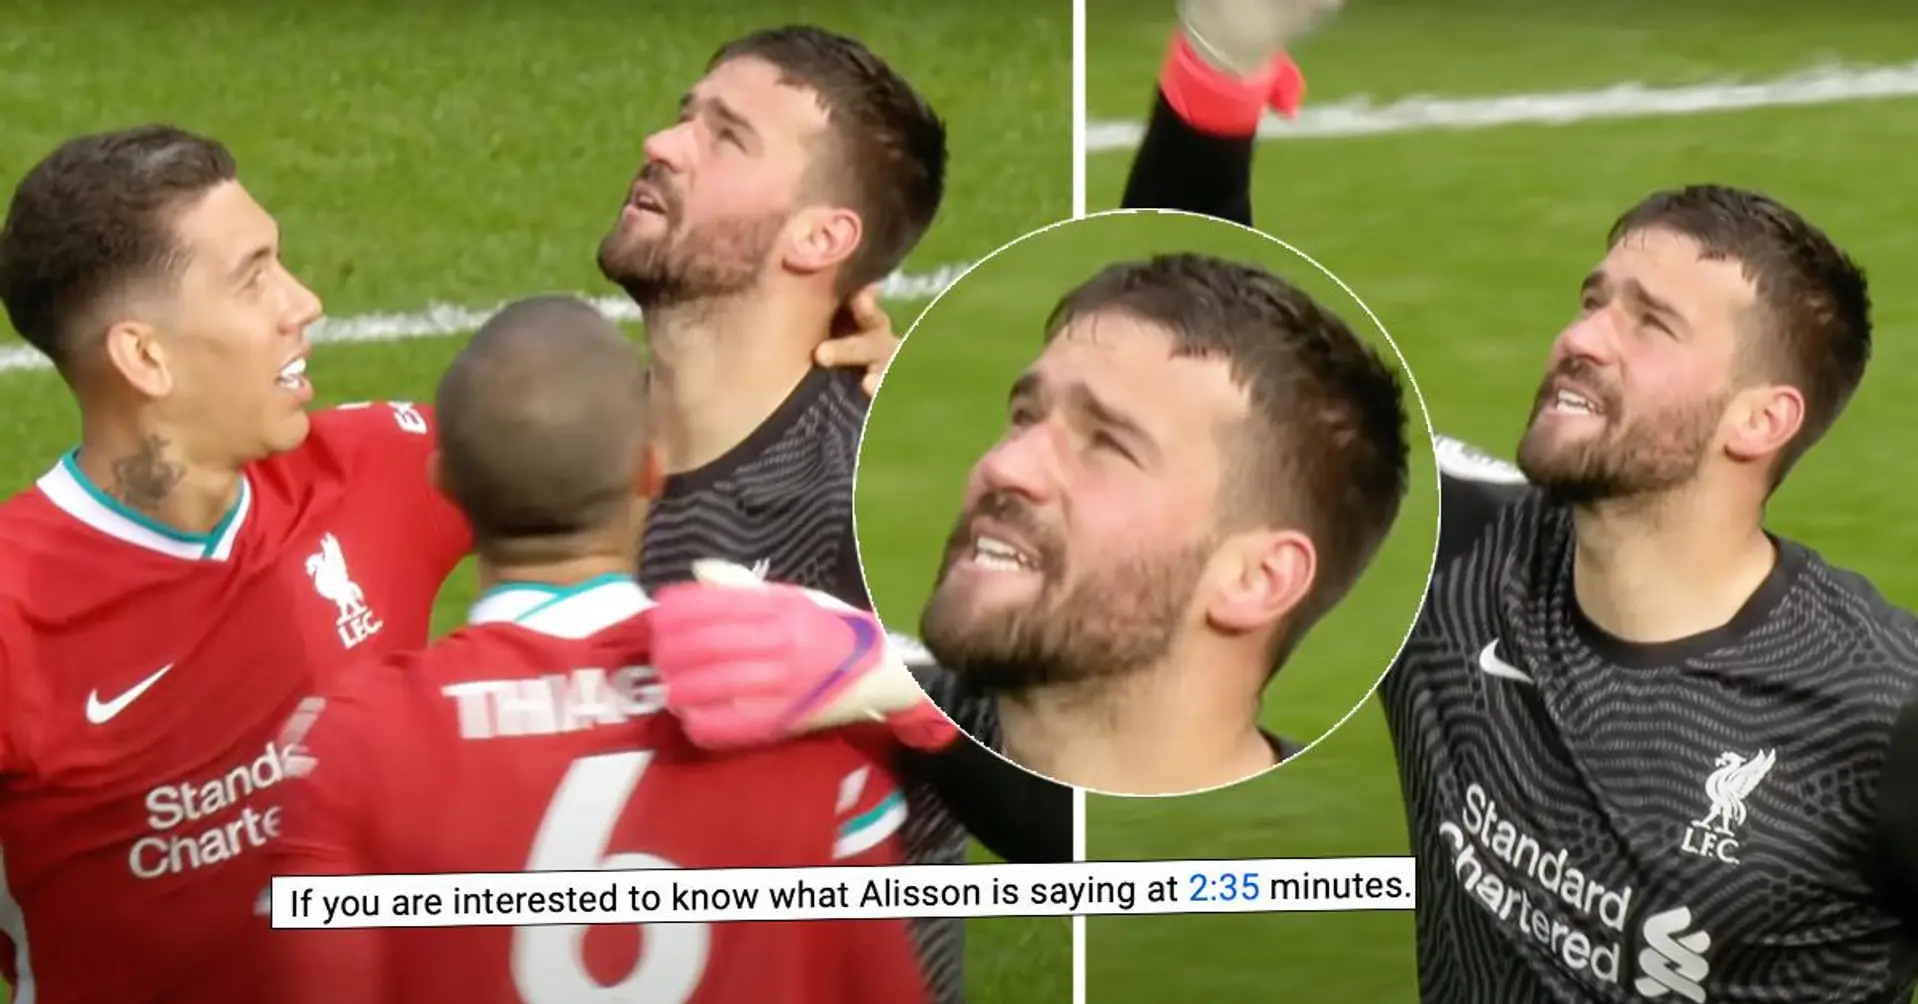 'Riesco a leggere chiaramente le sue labbra': il tifoso brasiliano rivela cosa ha detto Alisson dopo aver segnato per il Liverpool